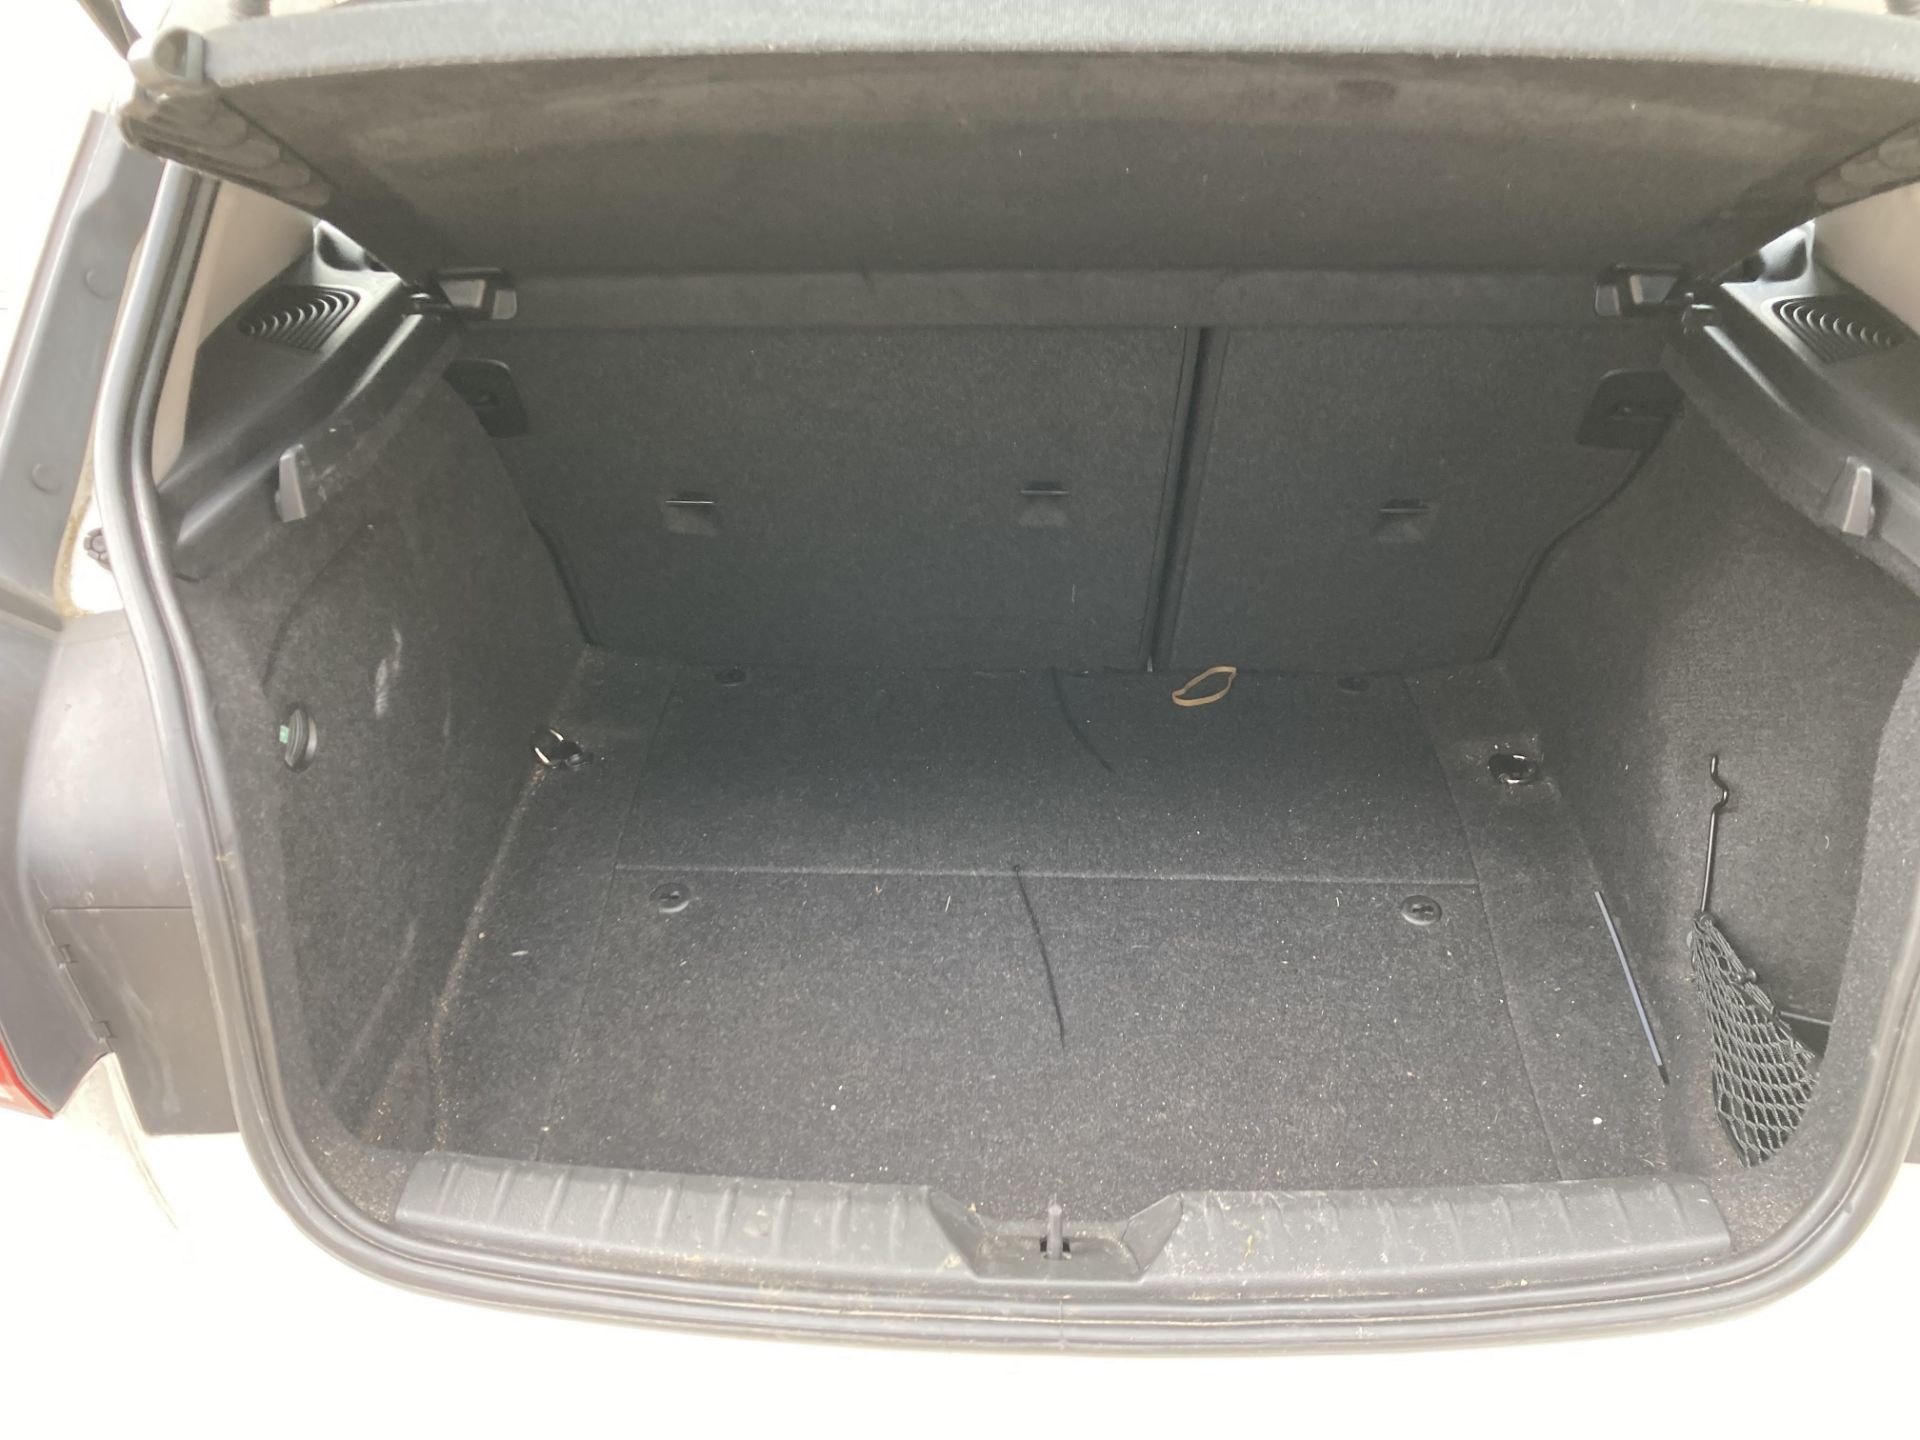 BMW 116d five door hatchback - diesel - white - dark grey cloth interior, with alloy wheels. - Image 7 of 11